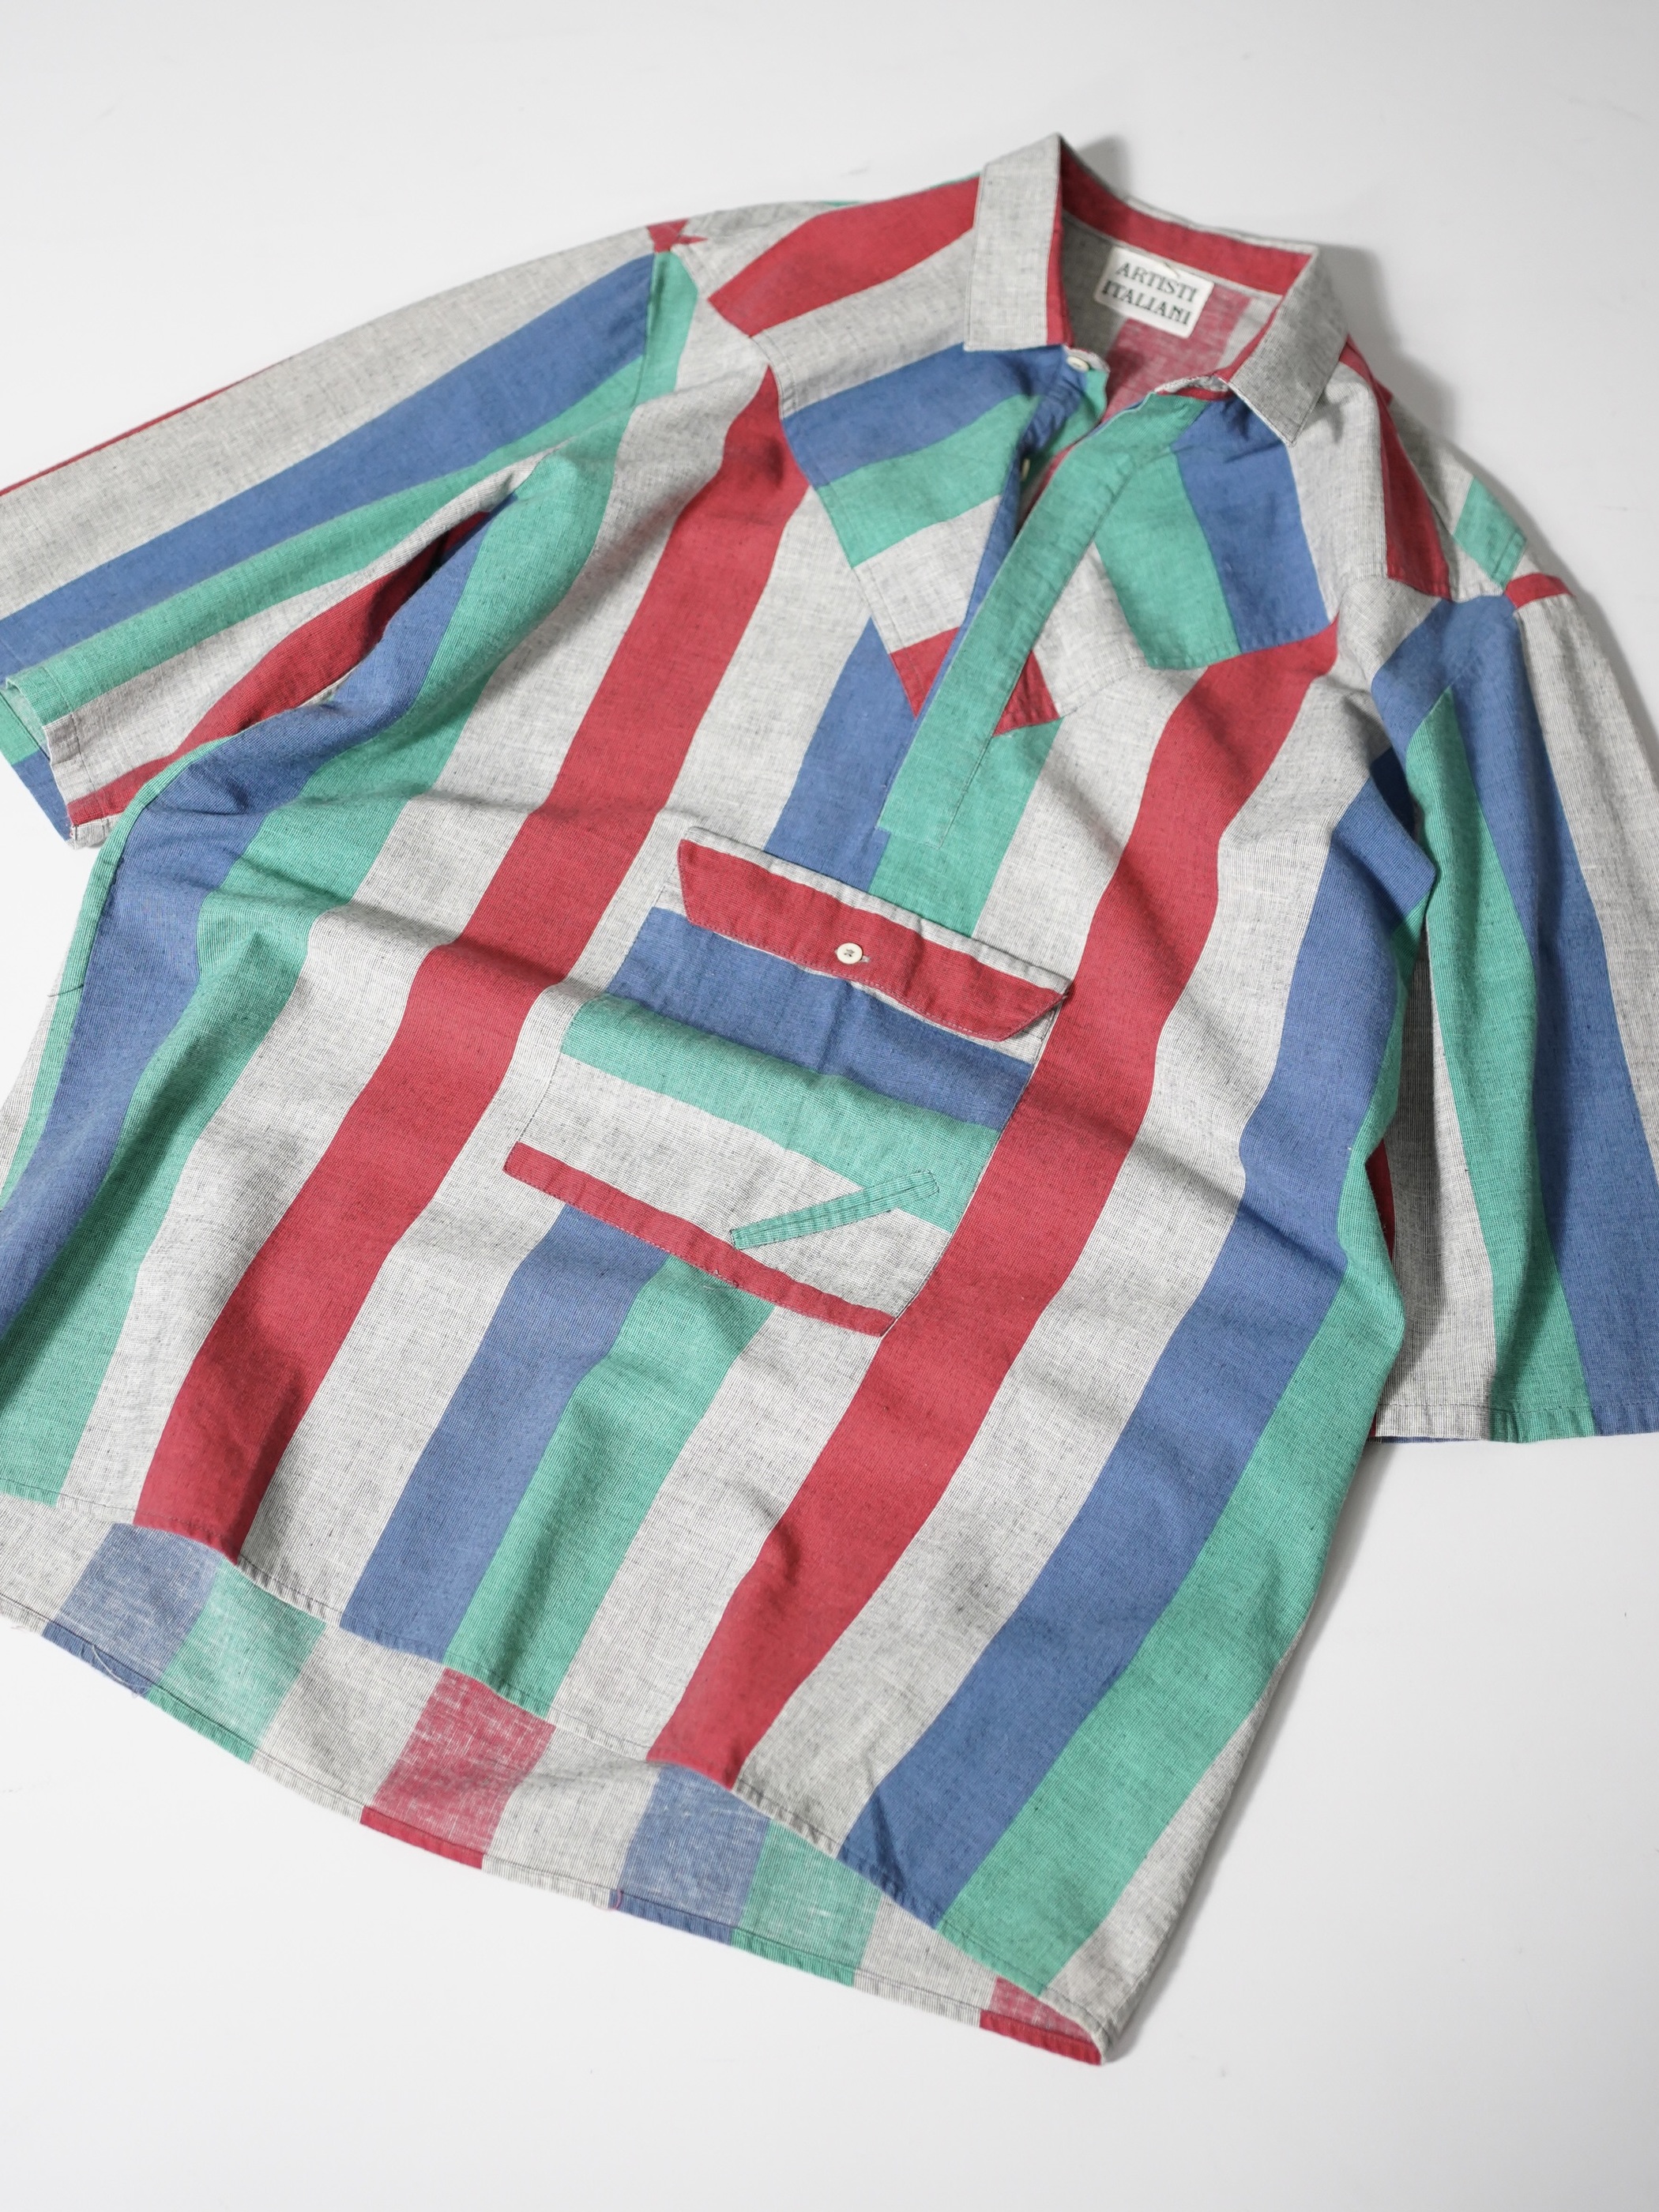 ARTISTI ITALIANI Design pocket S/S shirts / Made in Italy